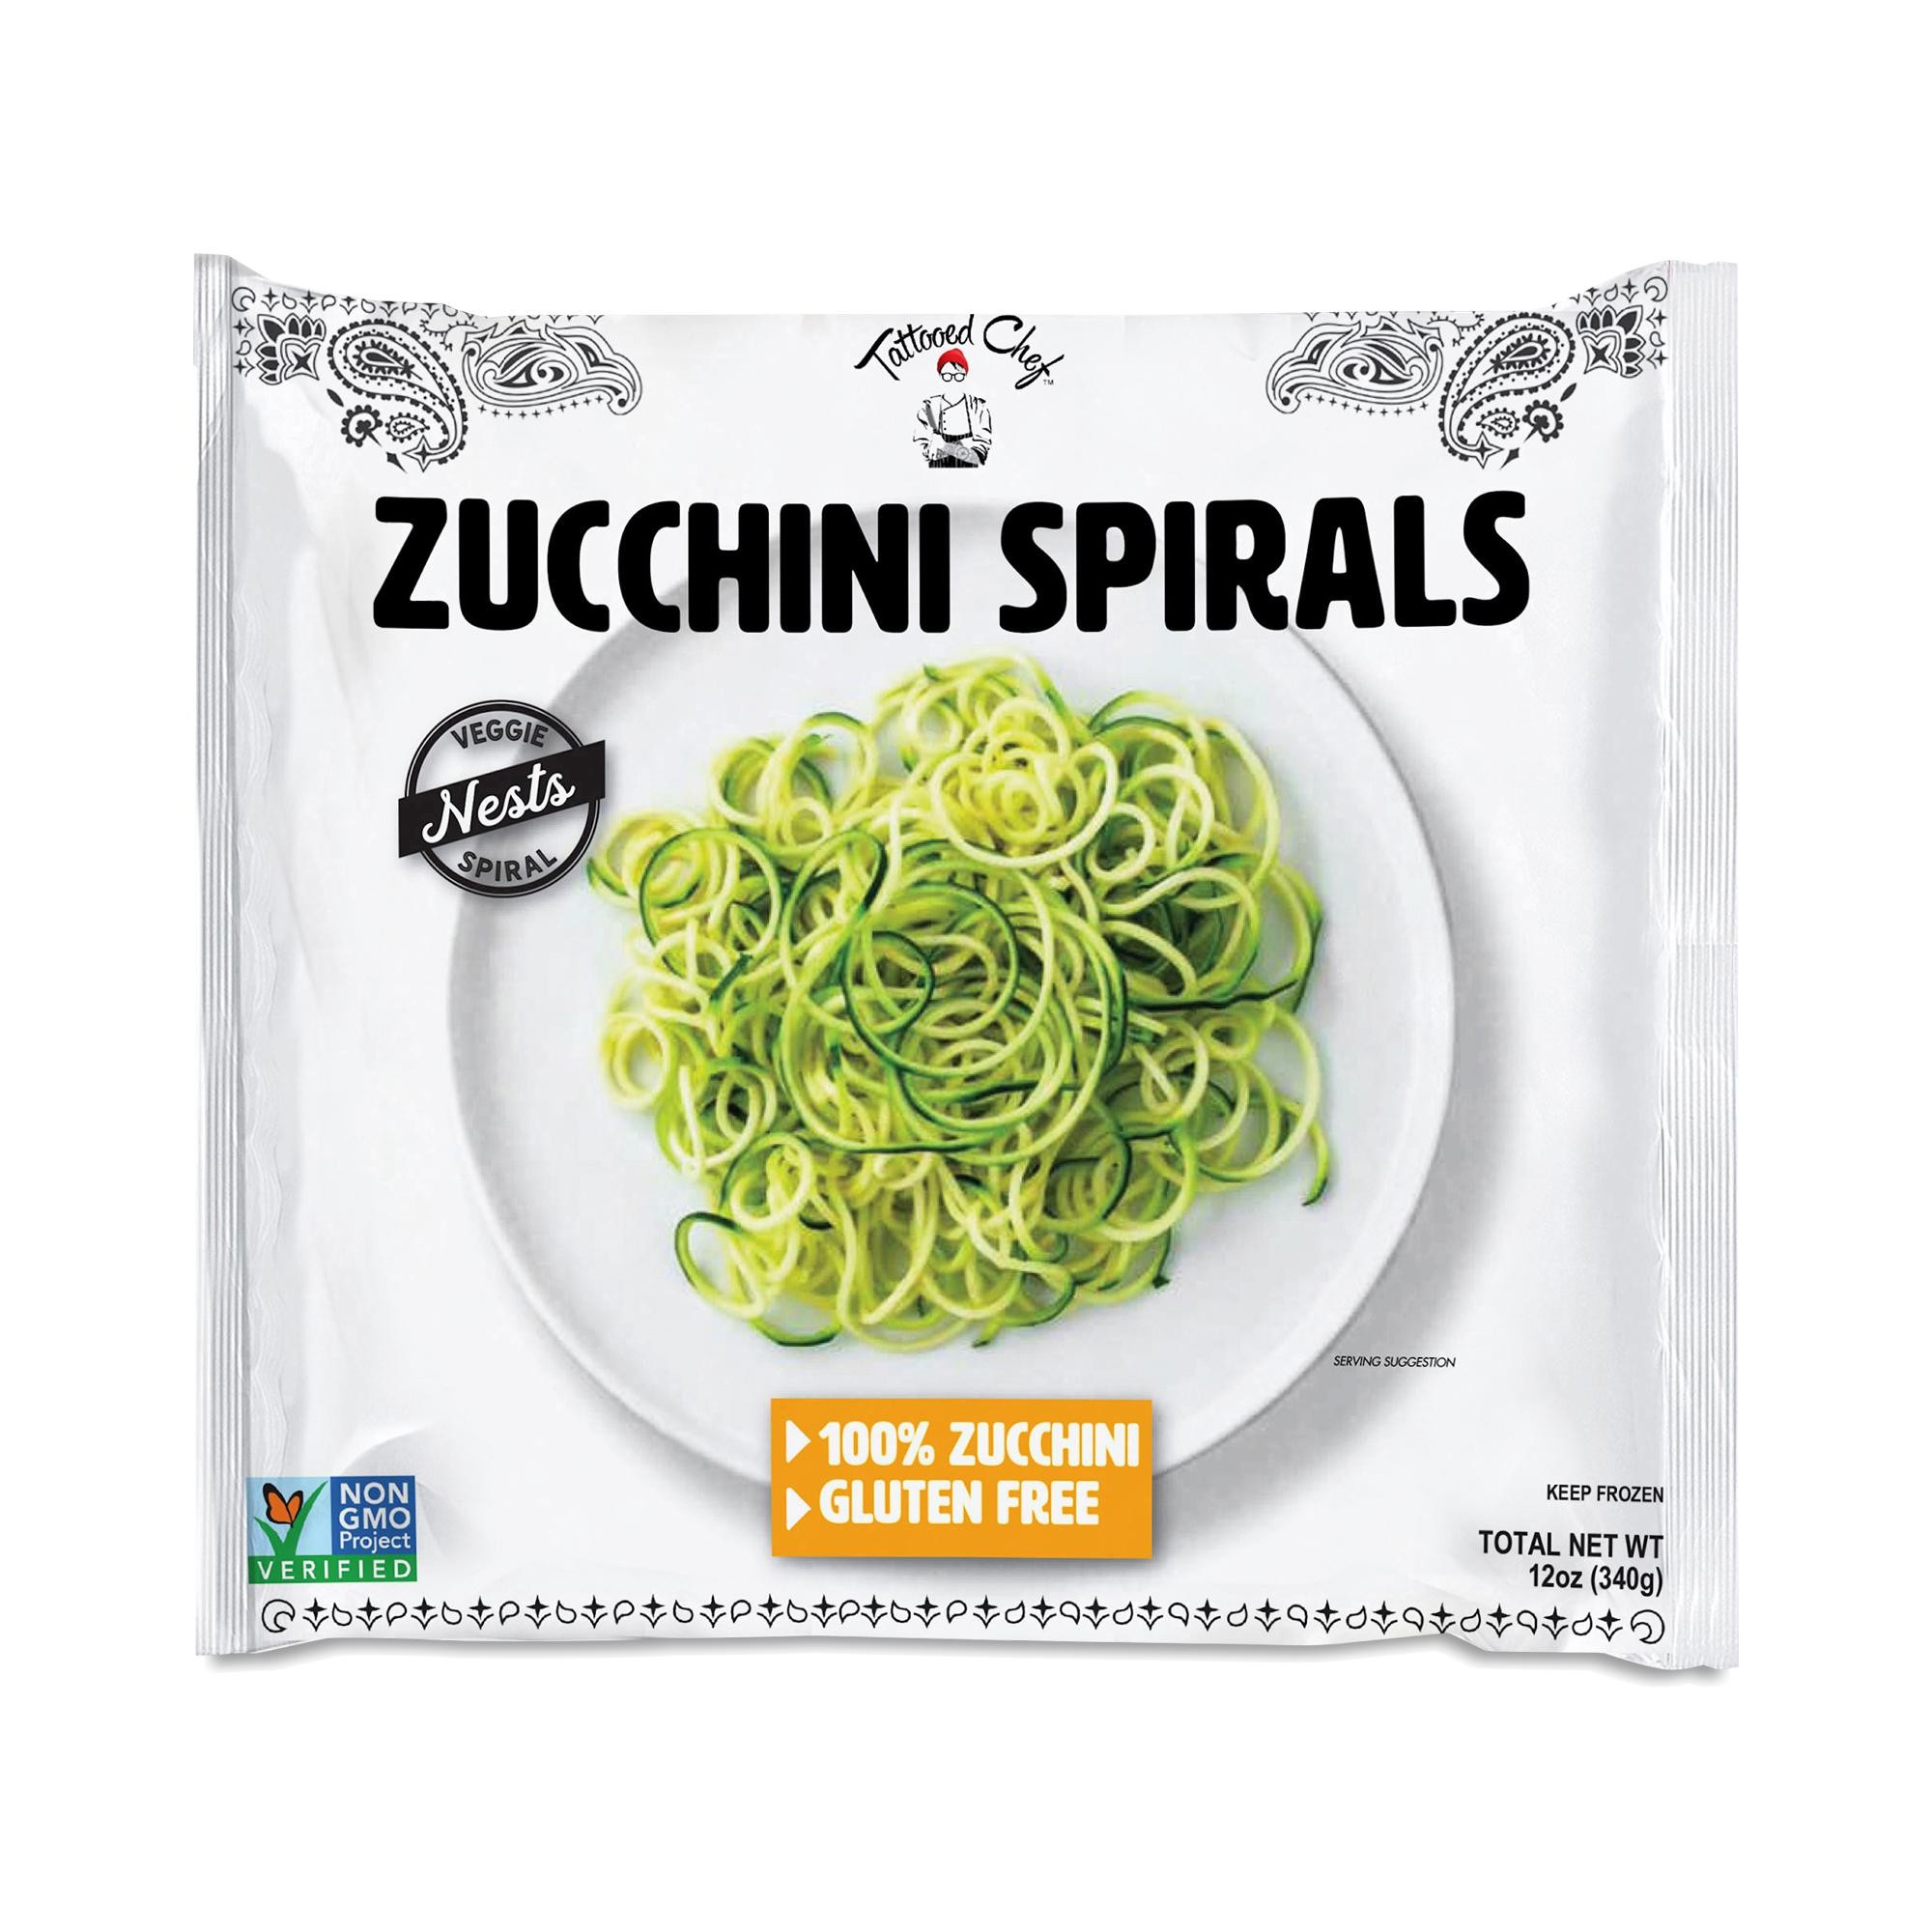 Tattooed Chef Zucchini Spirals Vegan Gluten Free - 12 oz